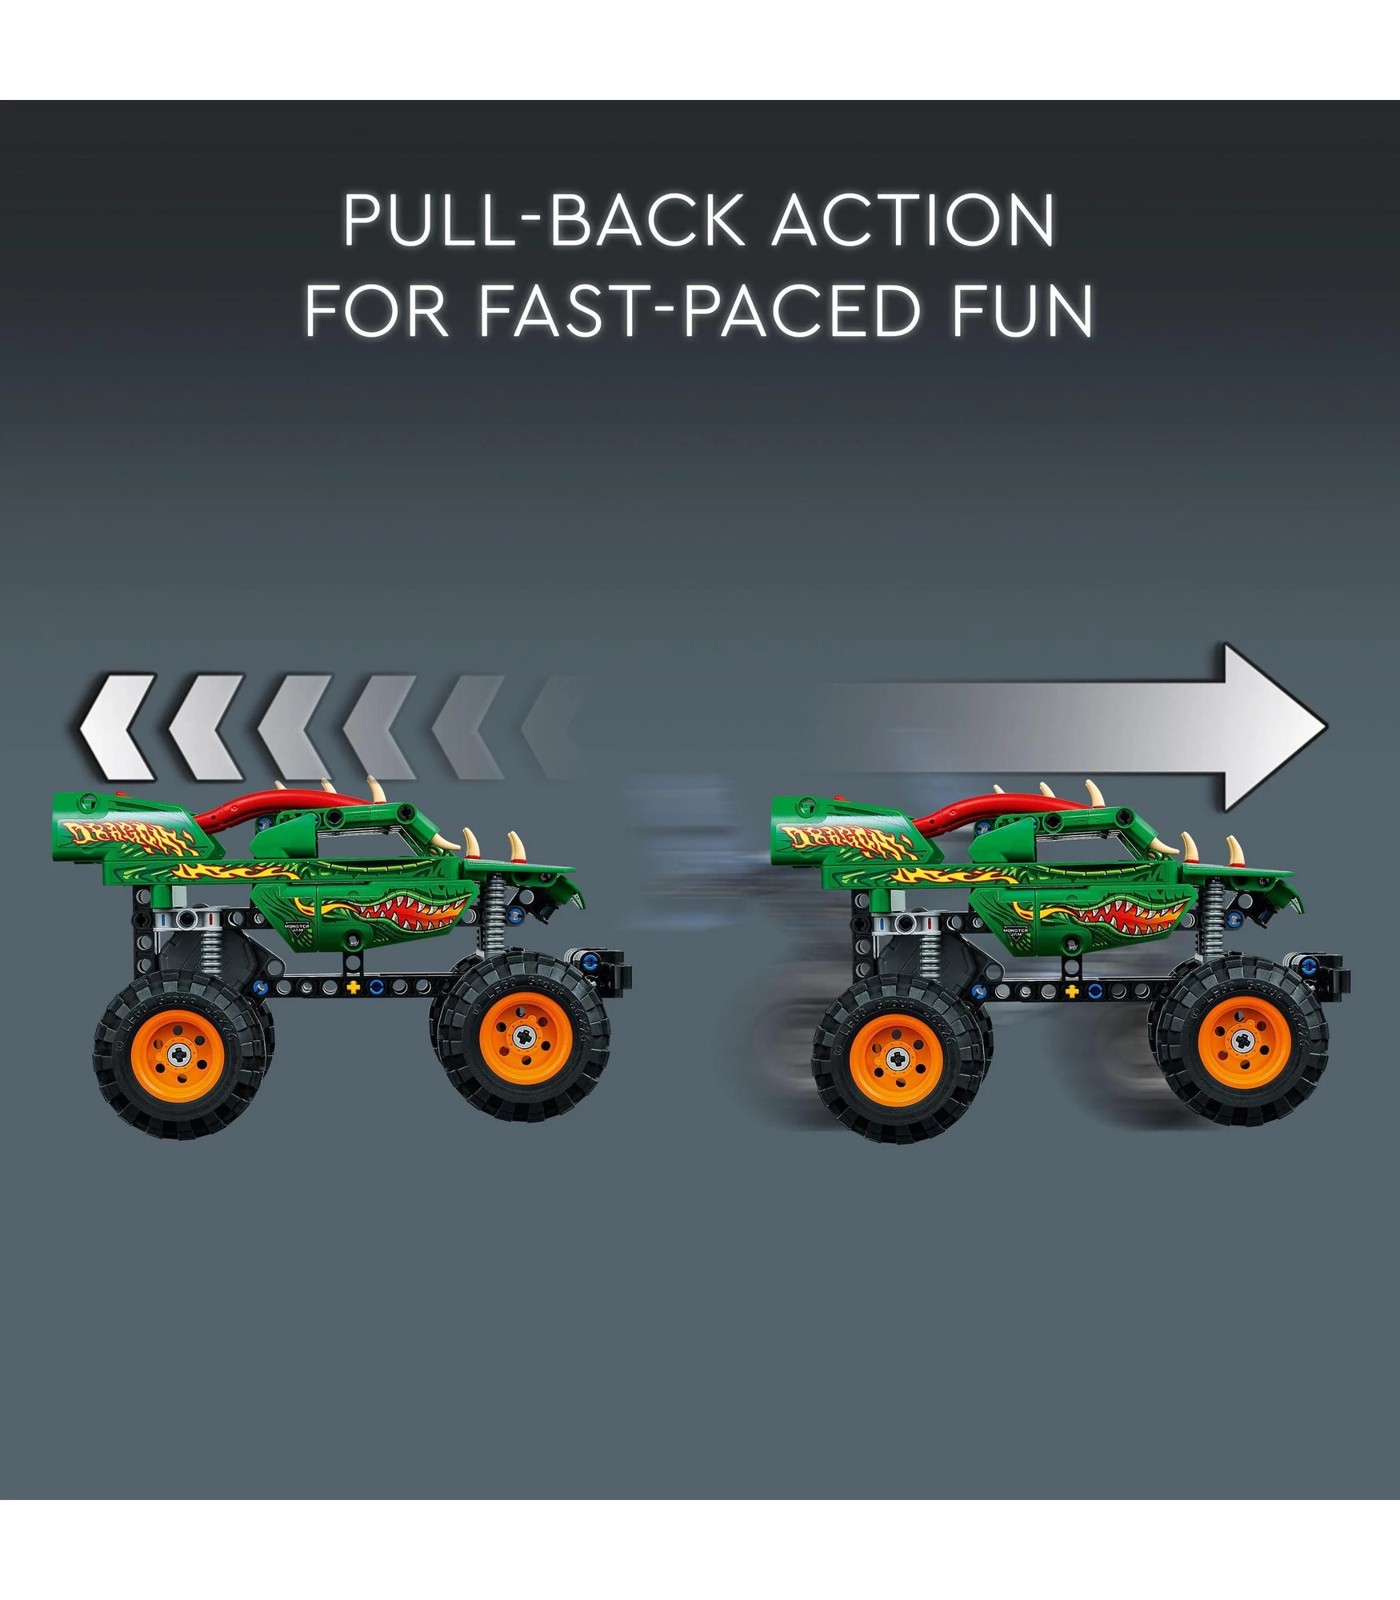 Lego Technic Monster Jam Dragon 2in1 Monster Truck Toy 42149 : Target